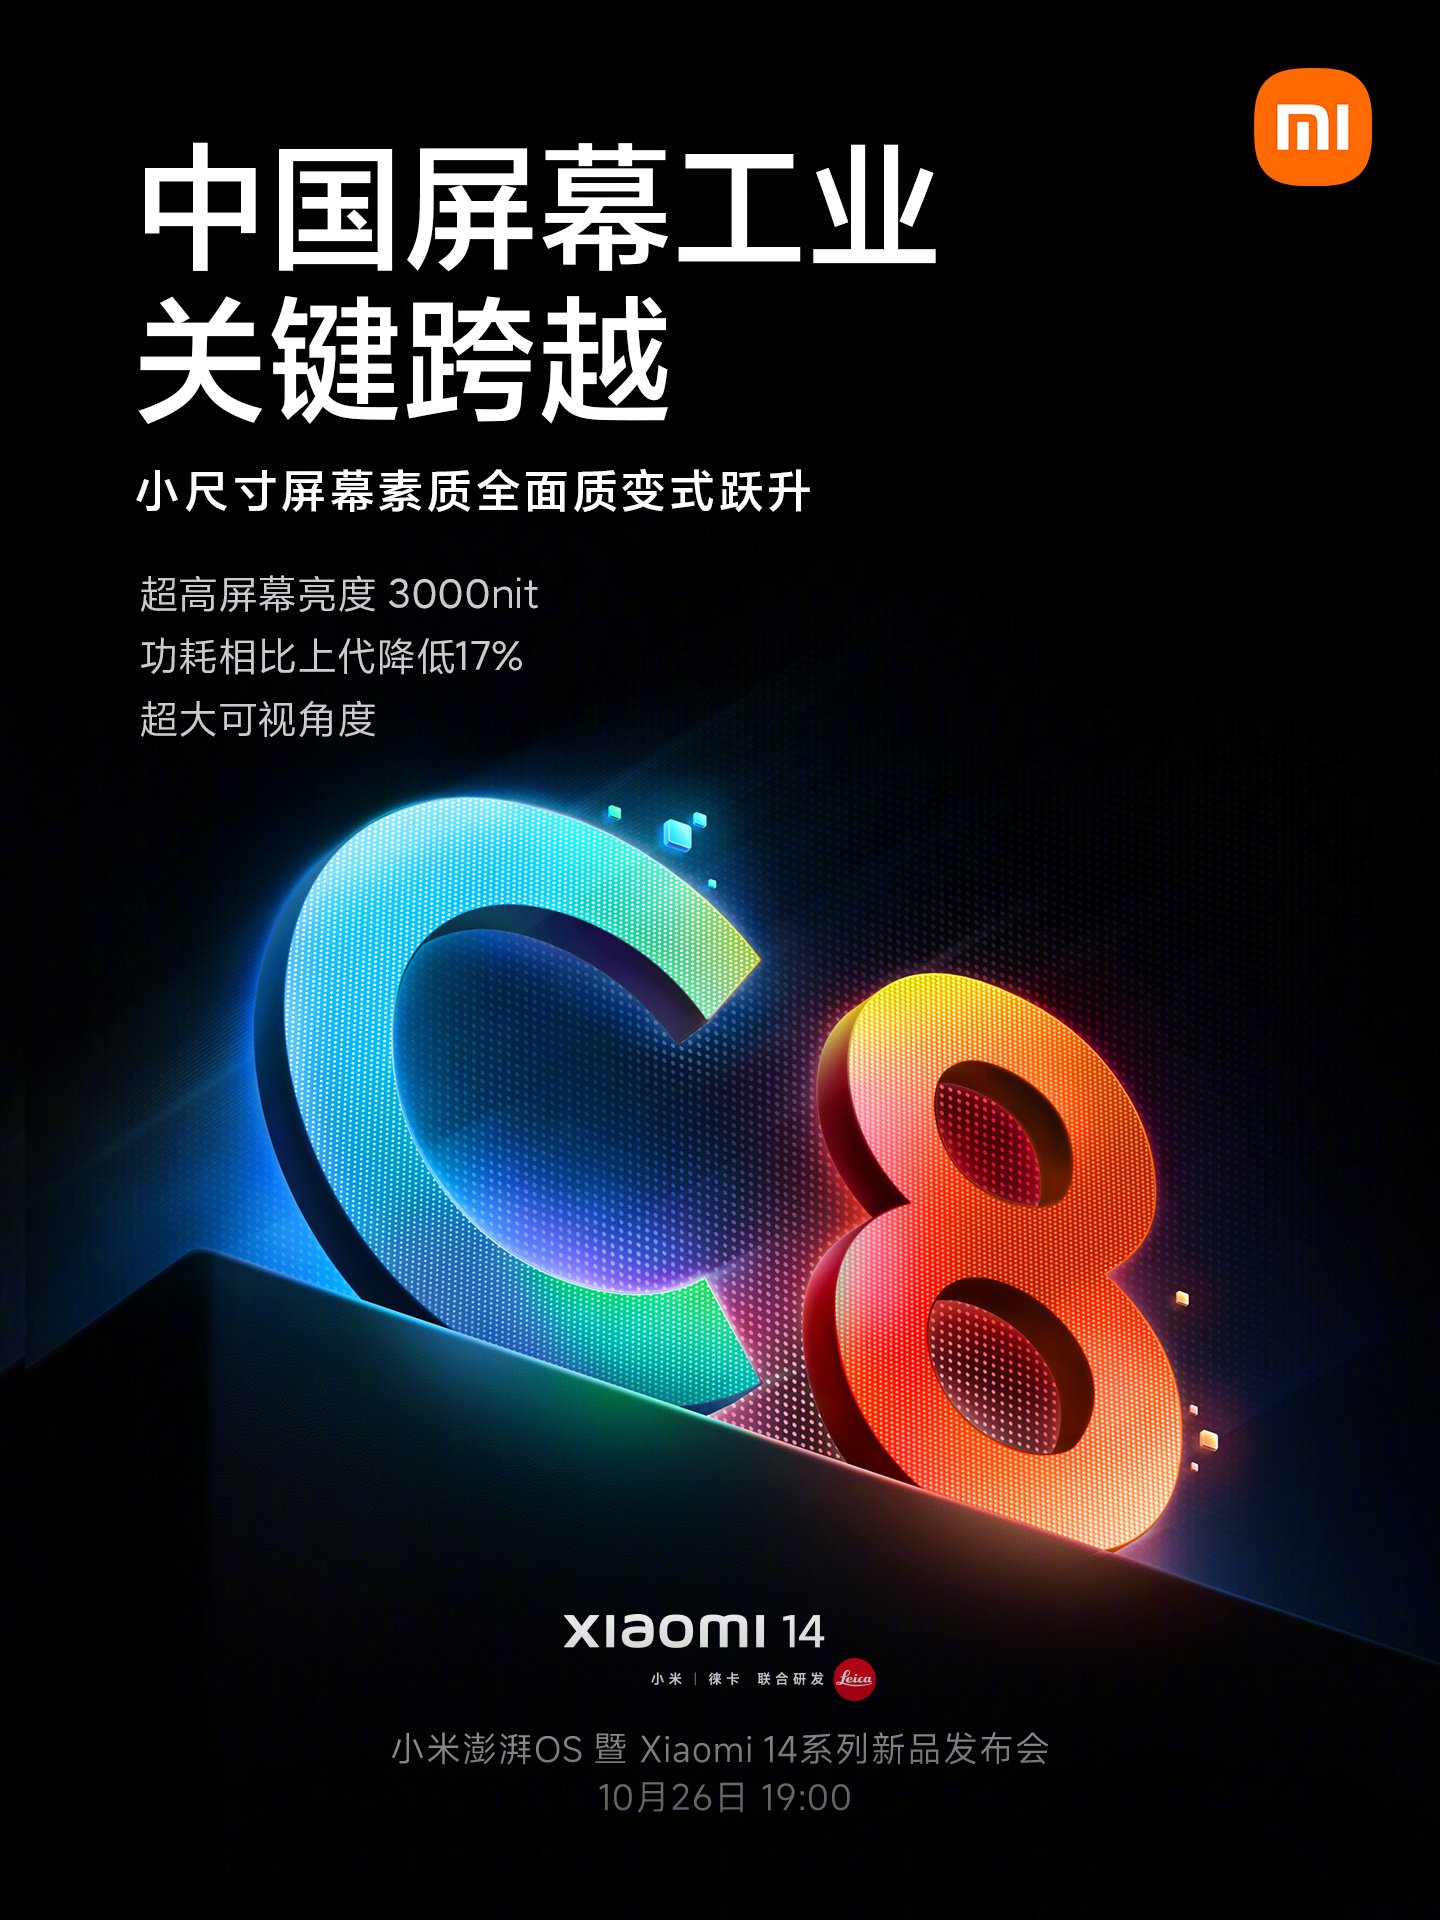 Xiaomi 14 - TCL CSOT C8 display 